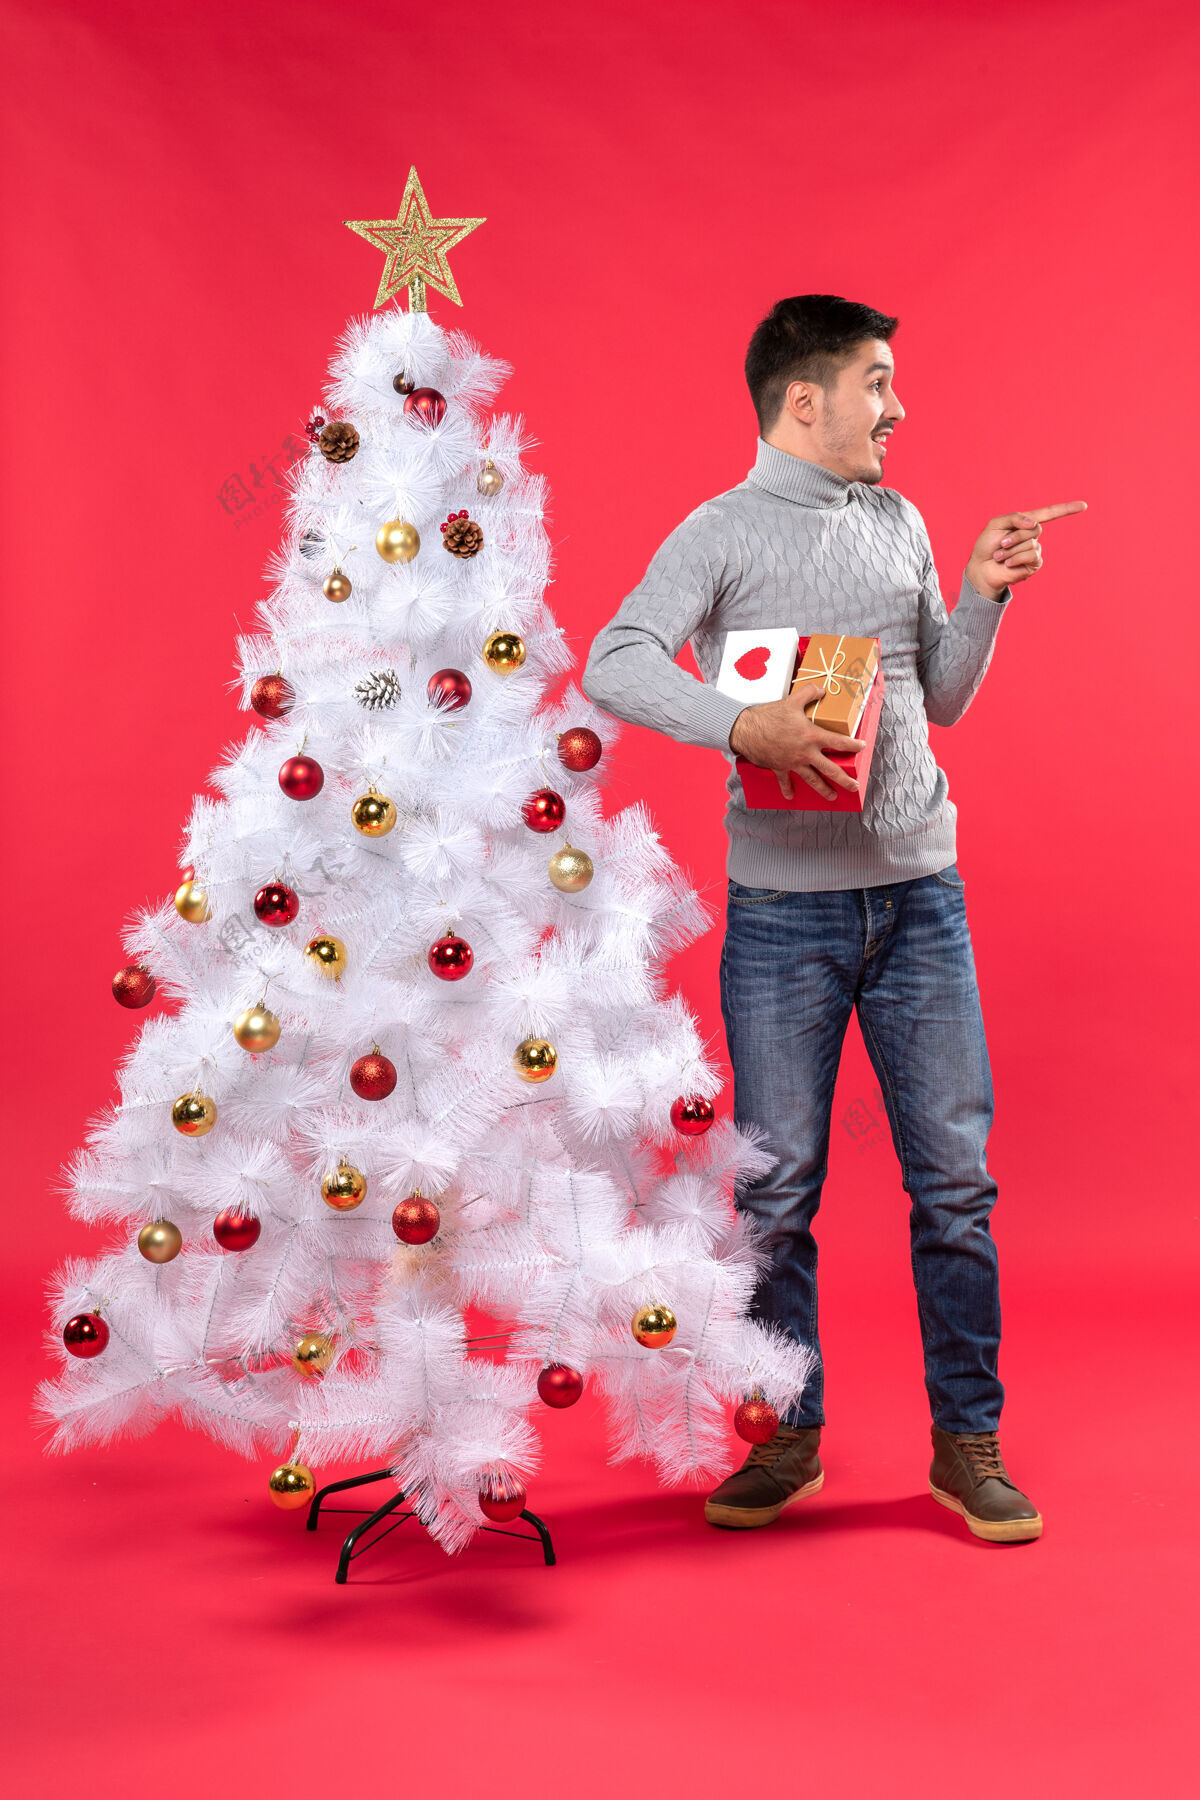 树穿着灰色上衣的浪漫帅哥站在装饰过的白色圣诞树旁衣服有人衬衫